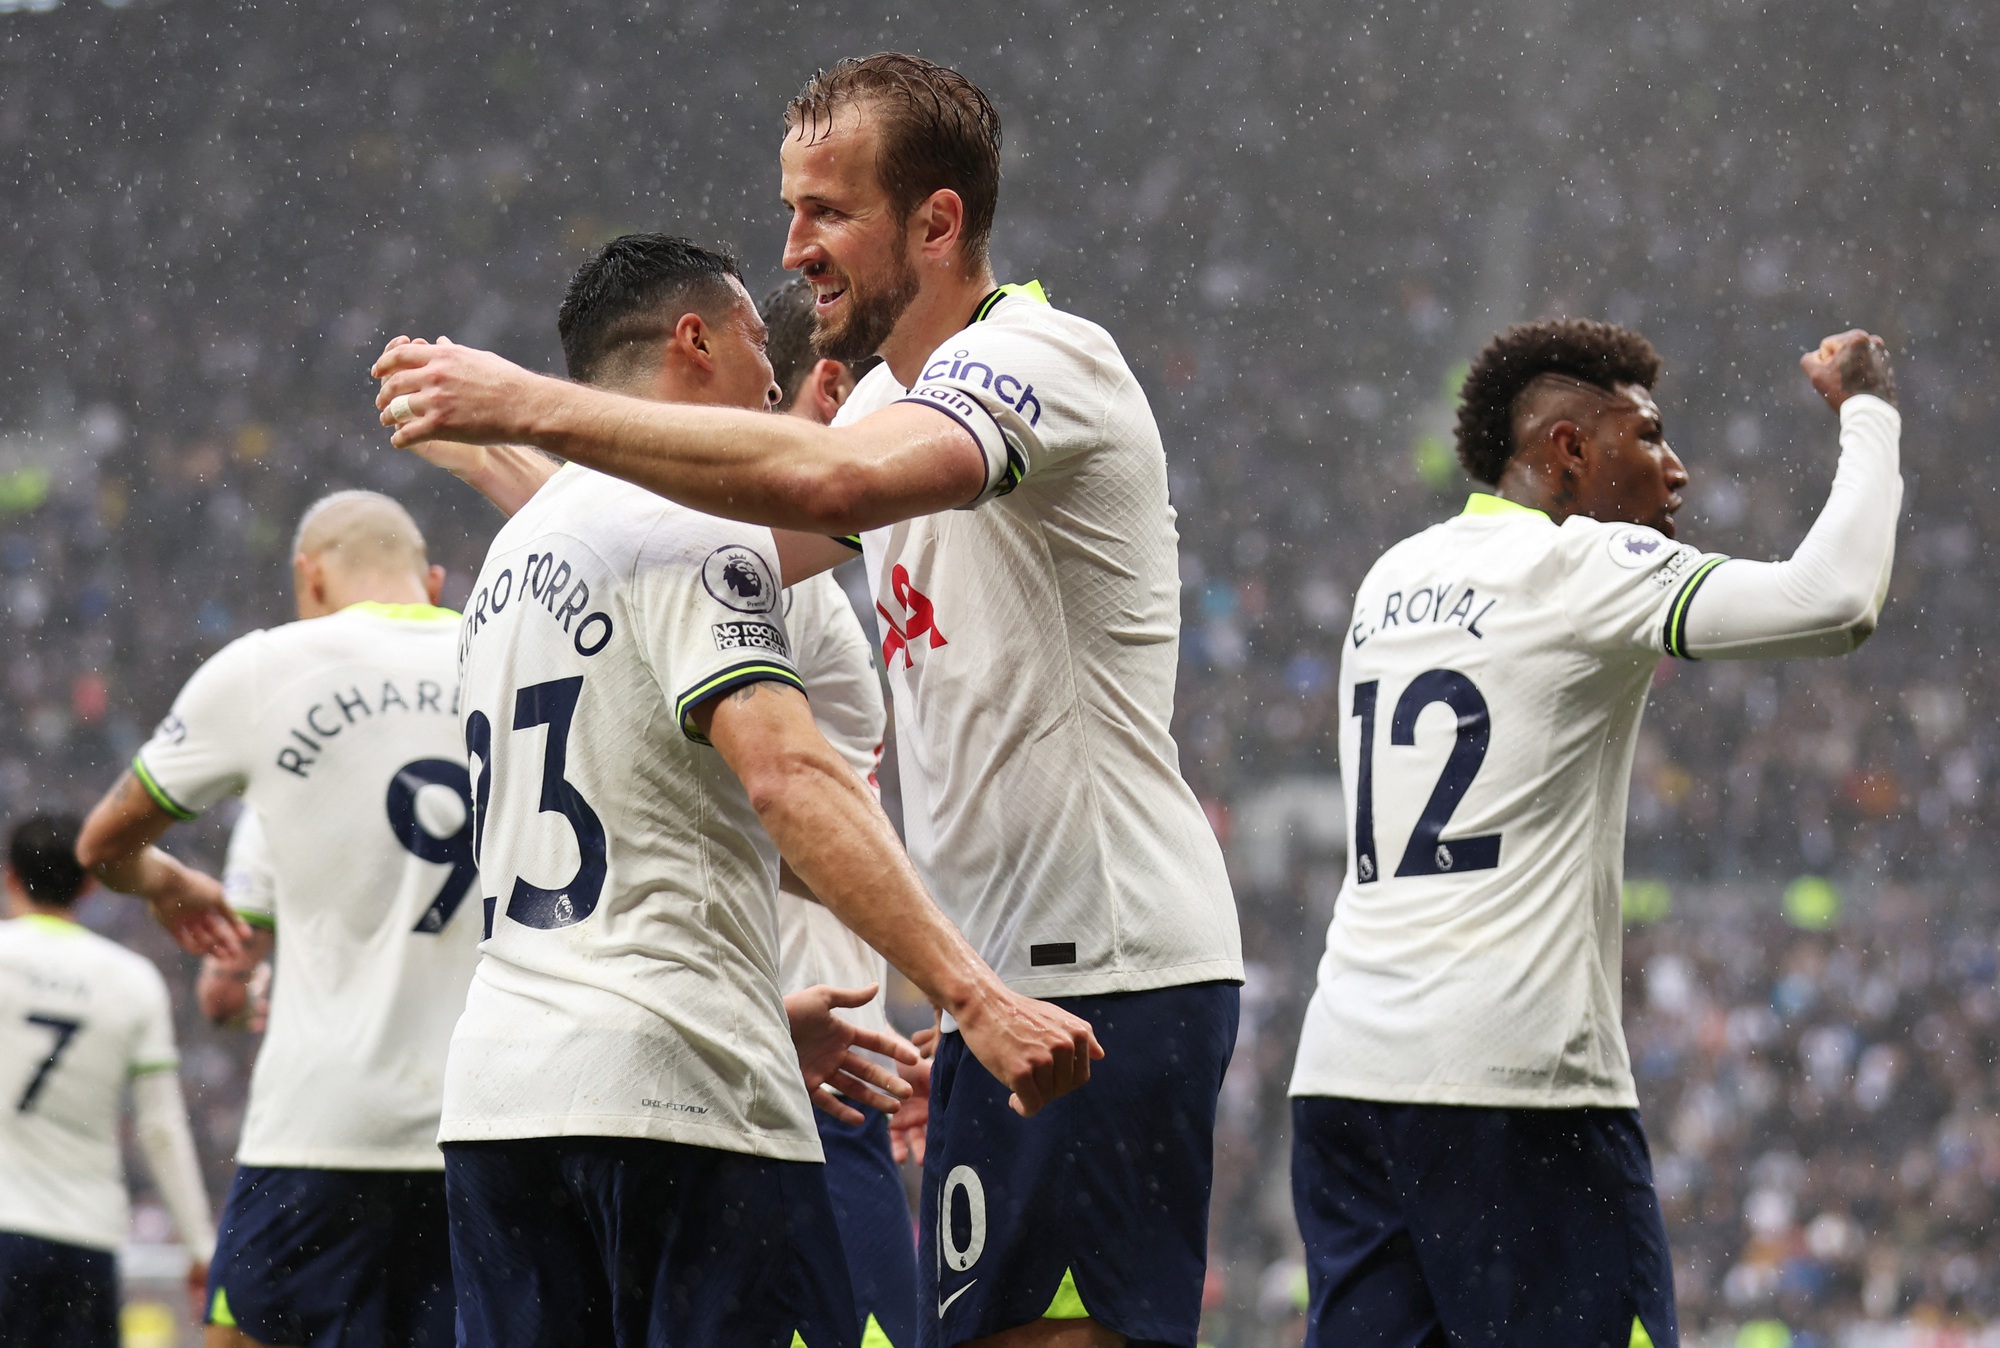 Thua thảm  Brentford sân nhà, Tottenham tan giấc mơ Top 6 - Ảnh 1.